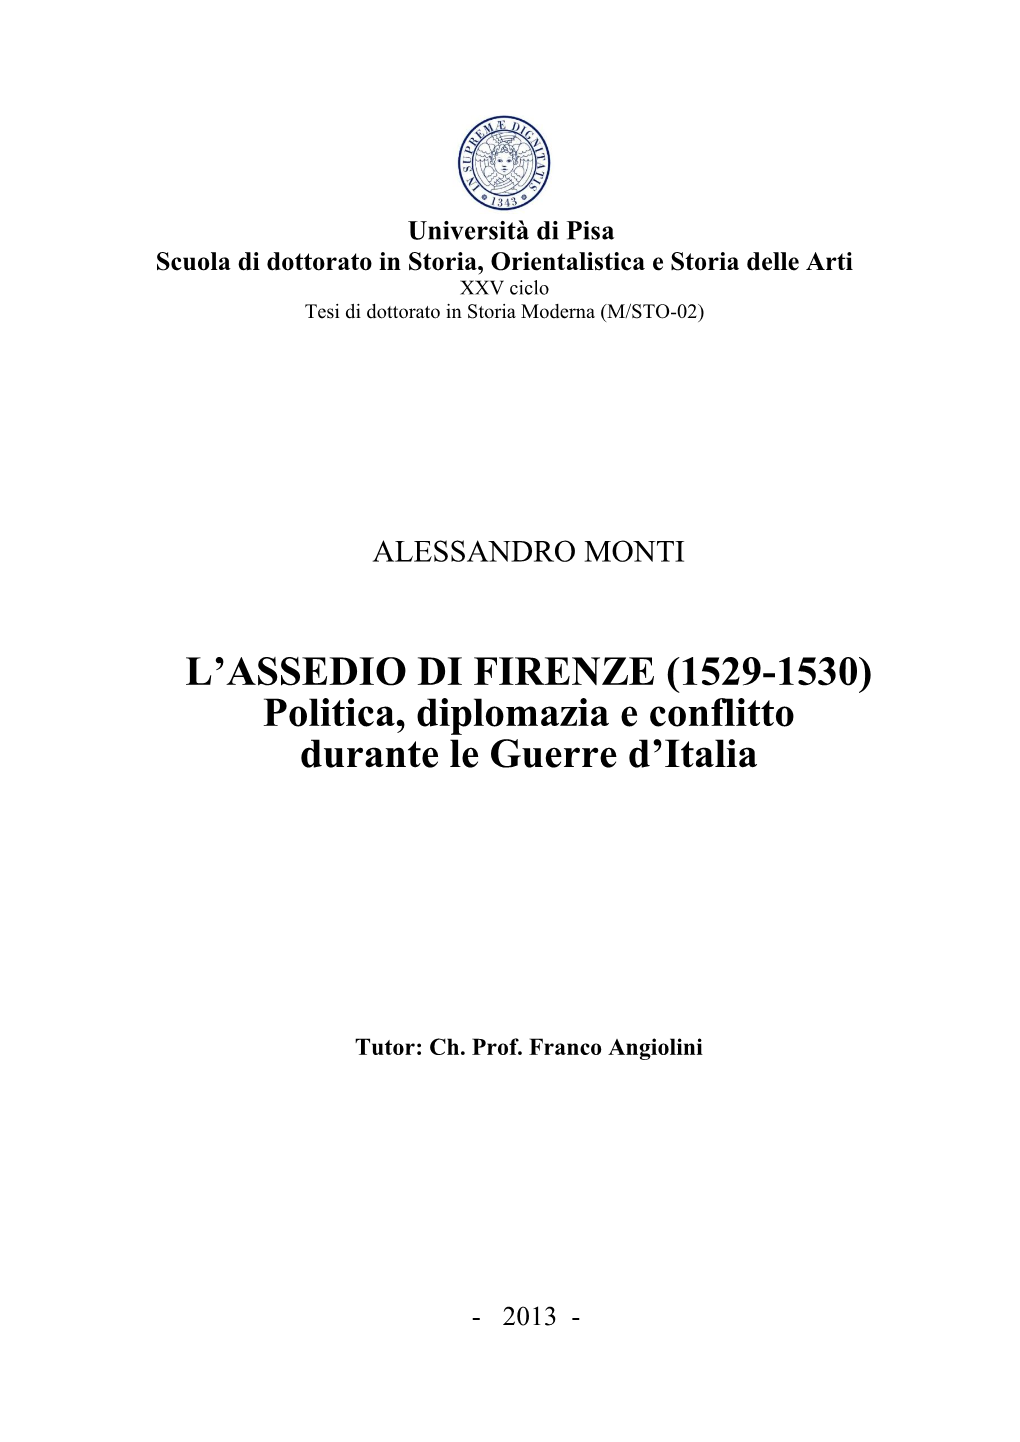 L'assedio Di Firenze (1529-1530)